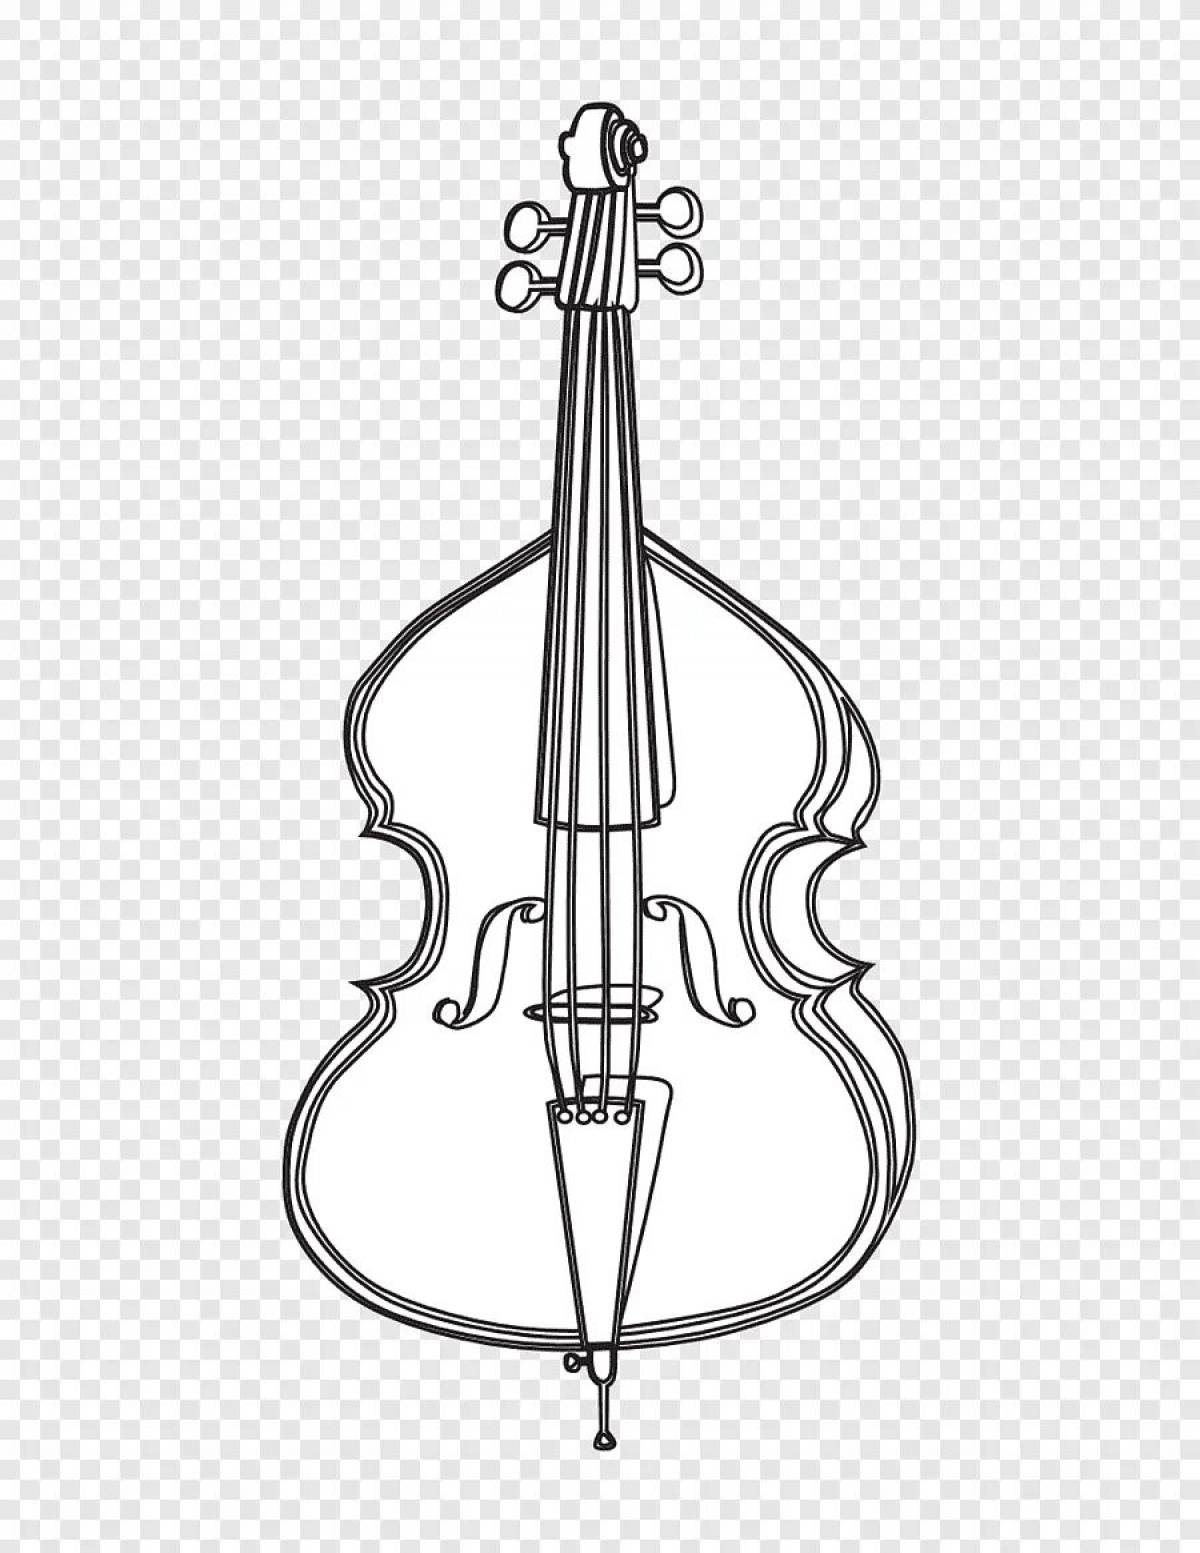 Violin and cello #2